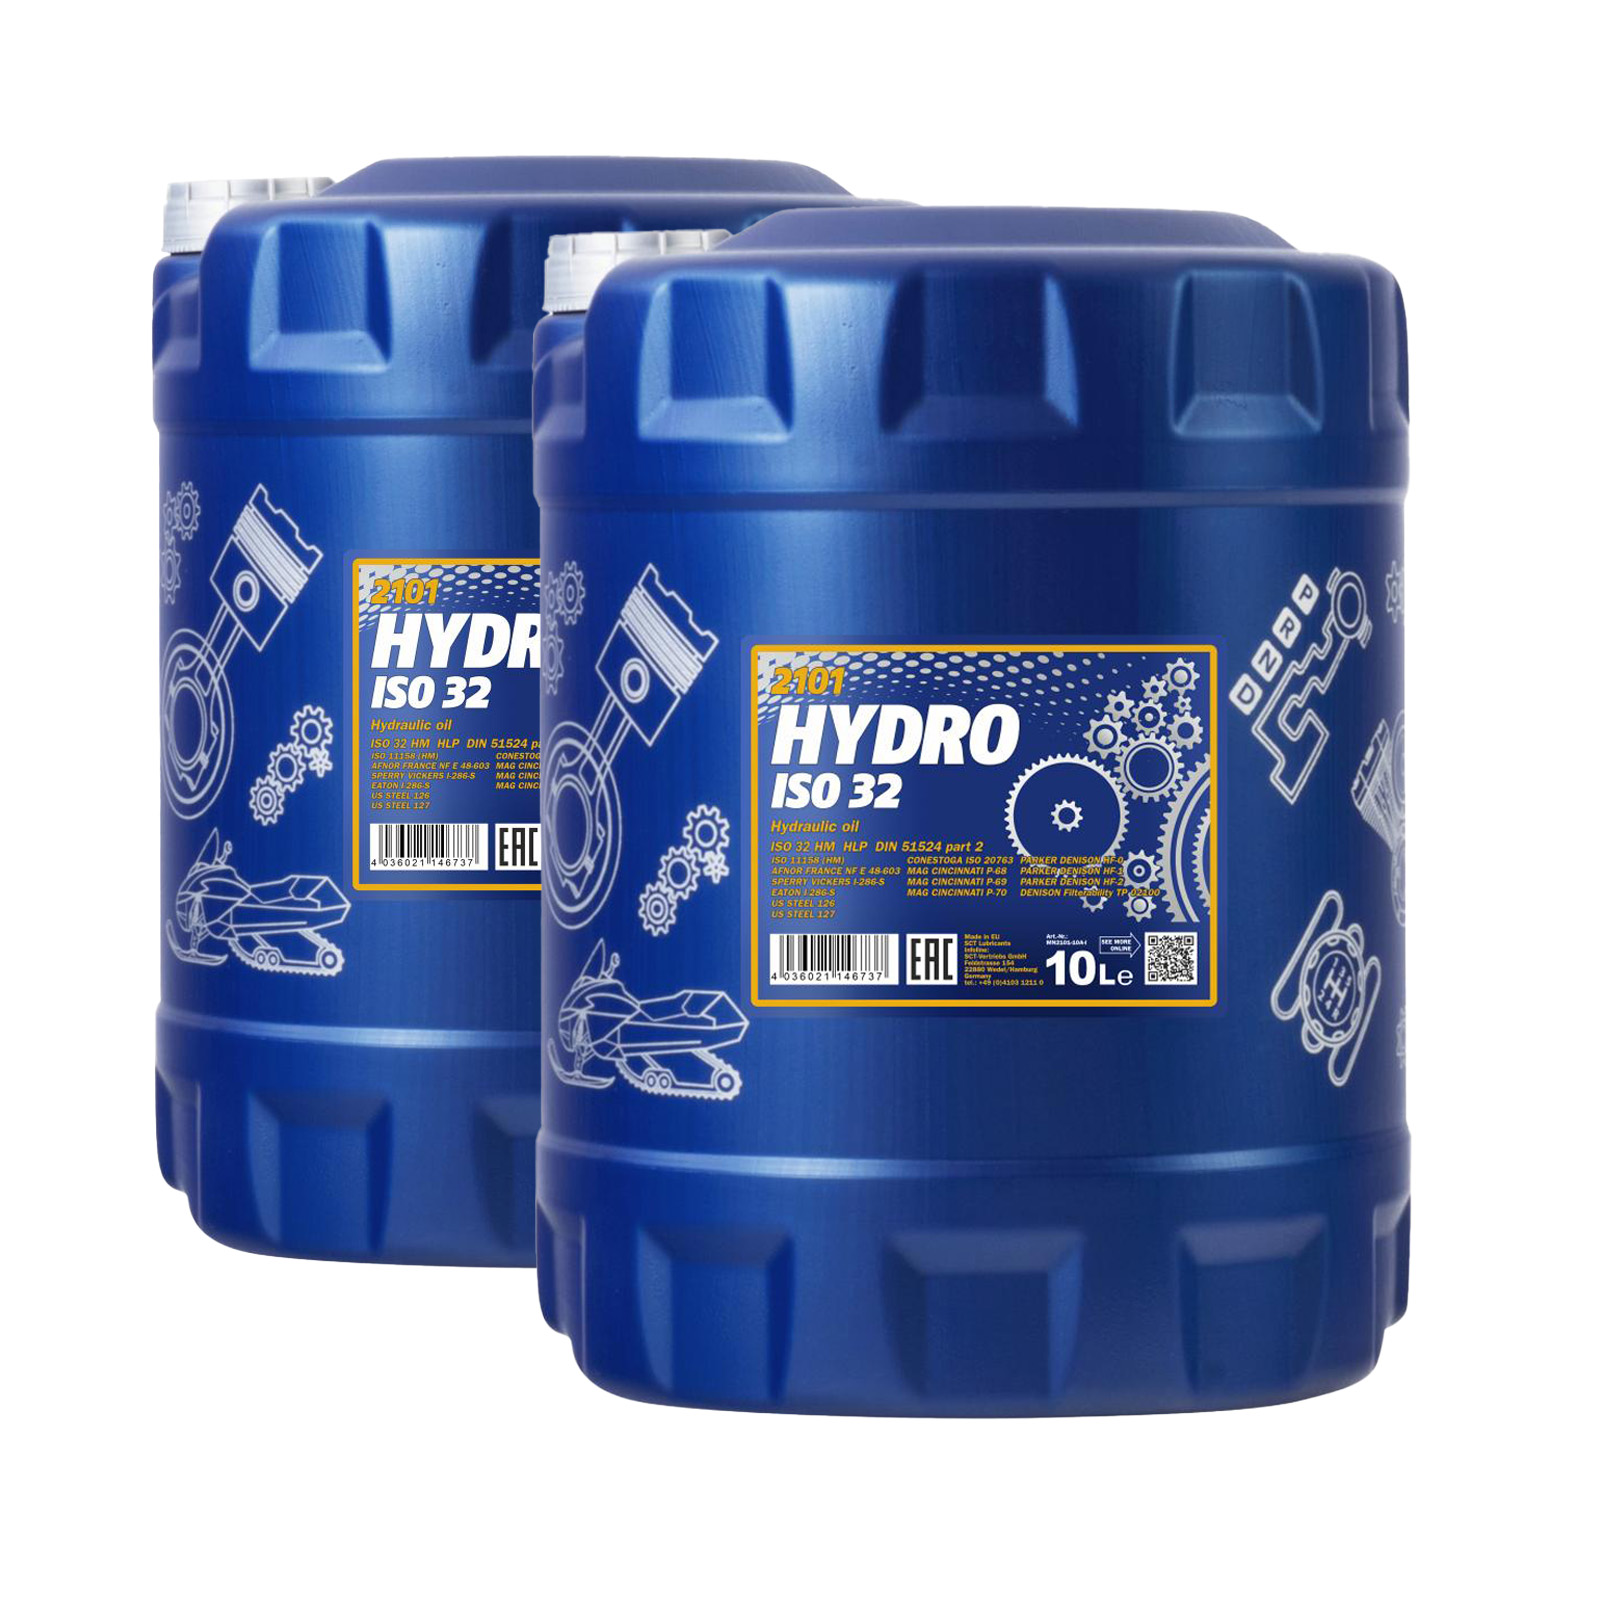 20 Liter (2x10) MANNOL Hydro ISO 32 Hydrauliköl Hydraulikflüssigkeit Hebebühne